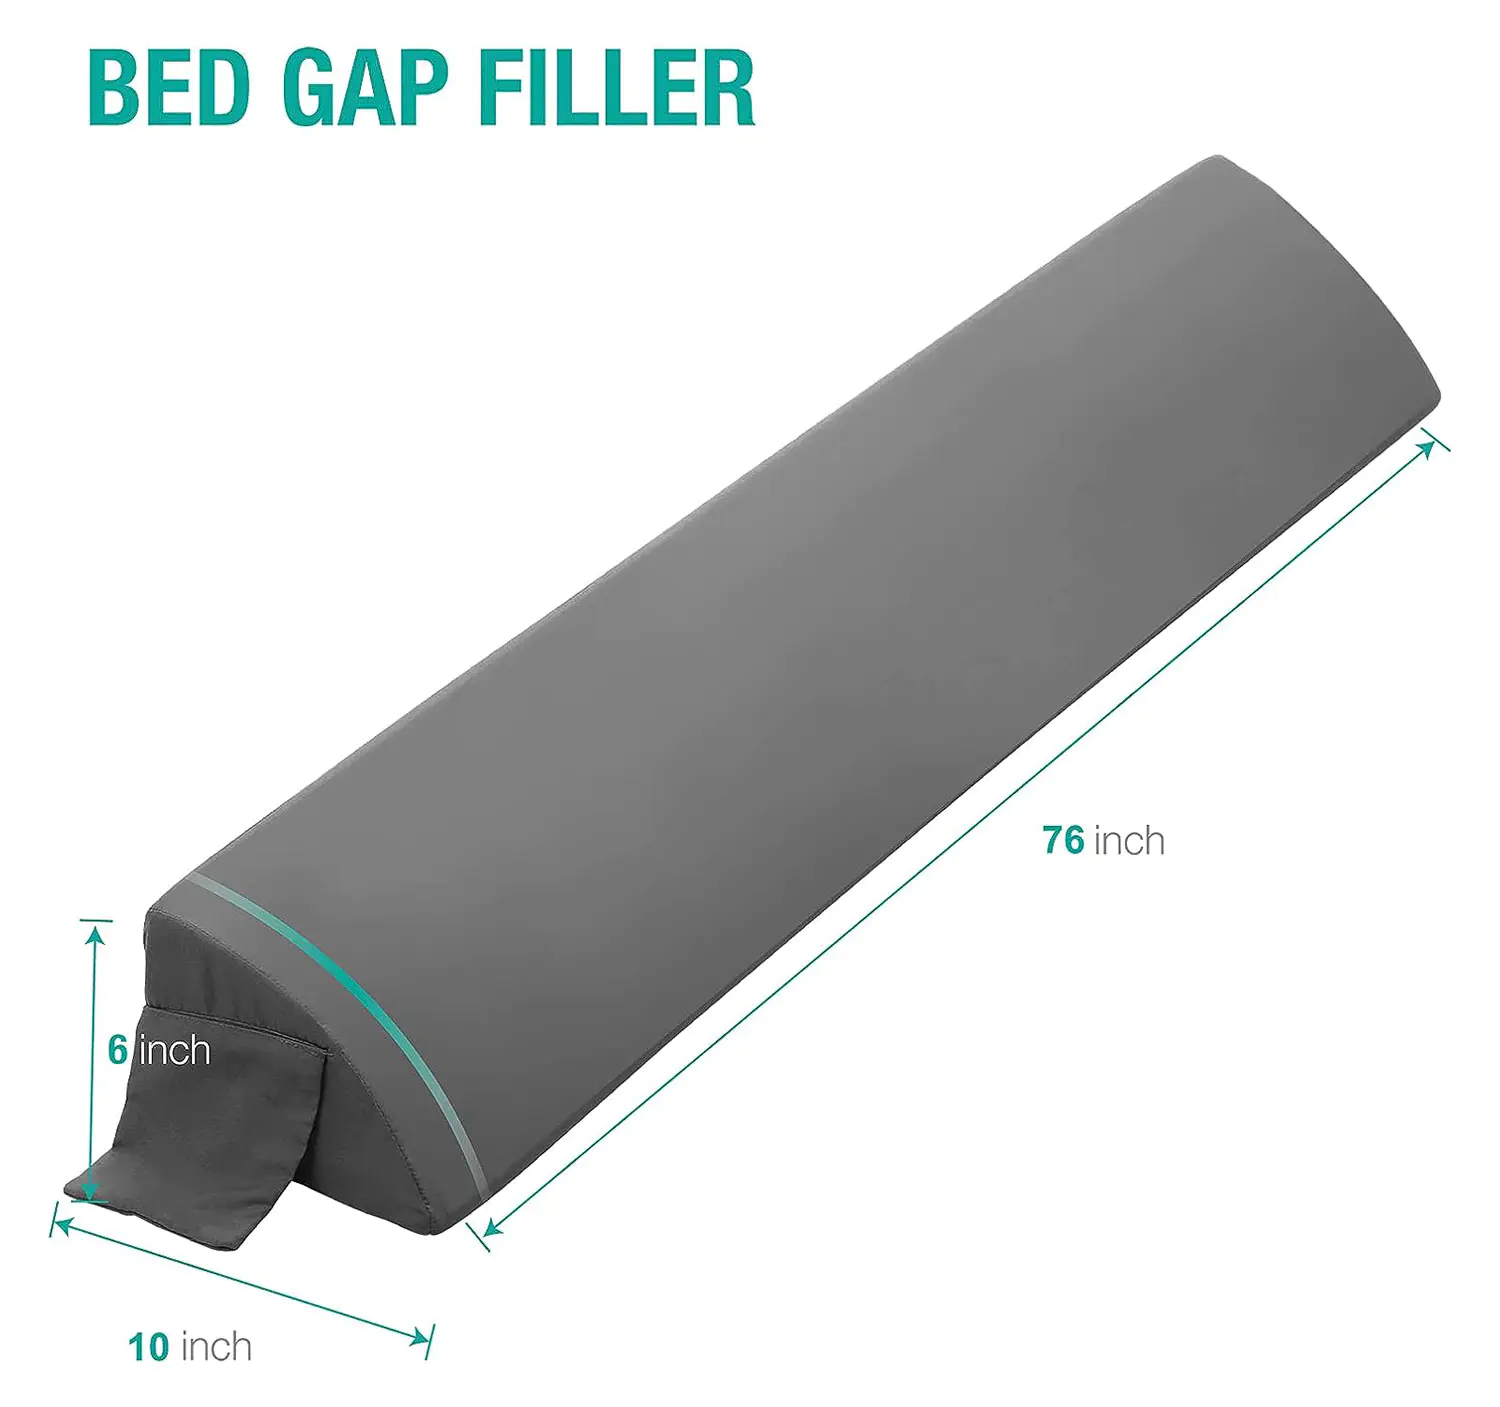 King Size Bed Wedge Pillow Gap Filler/Headboard Pillow/Mattress Wedge